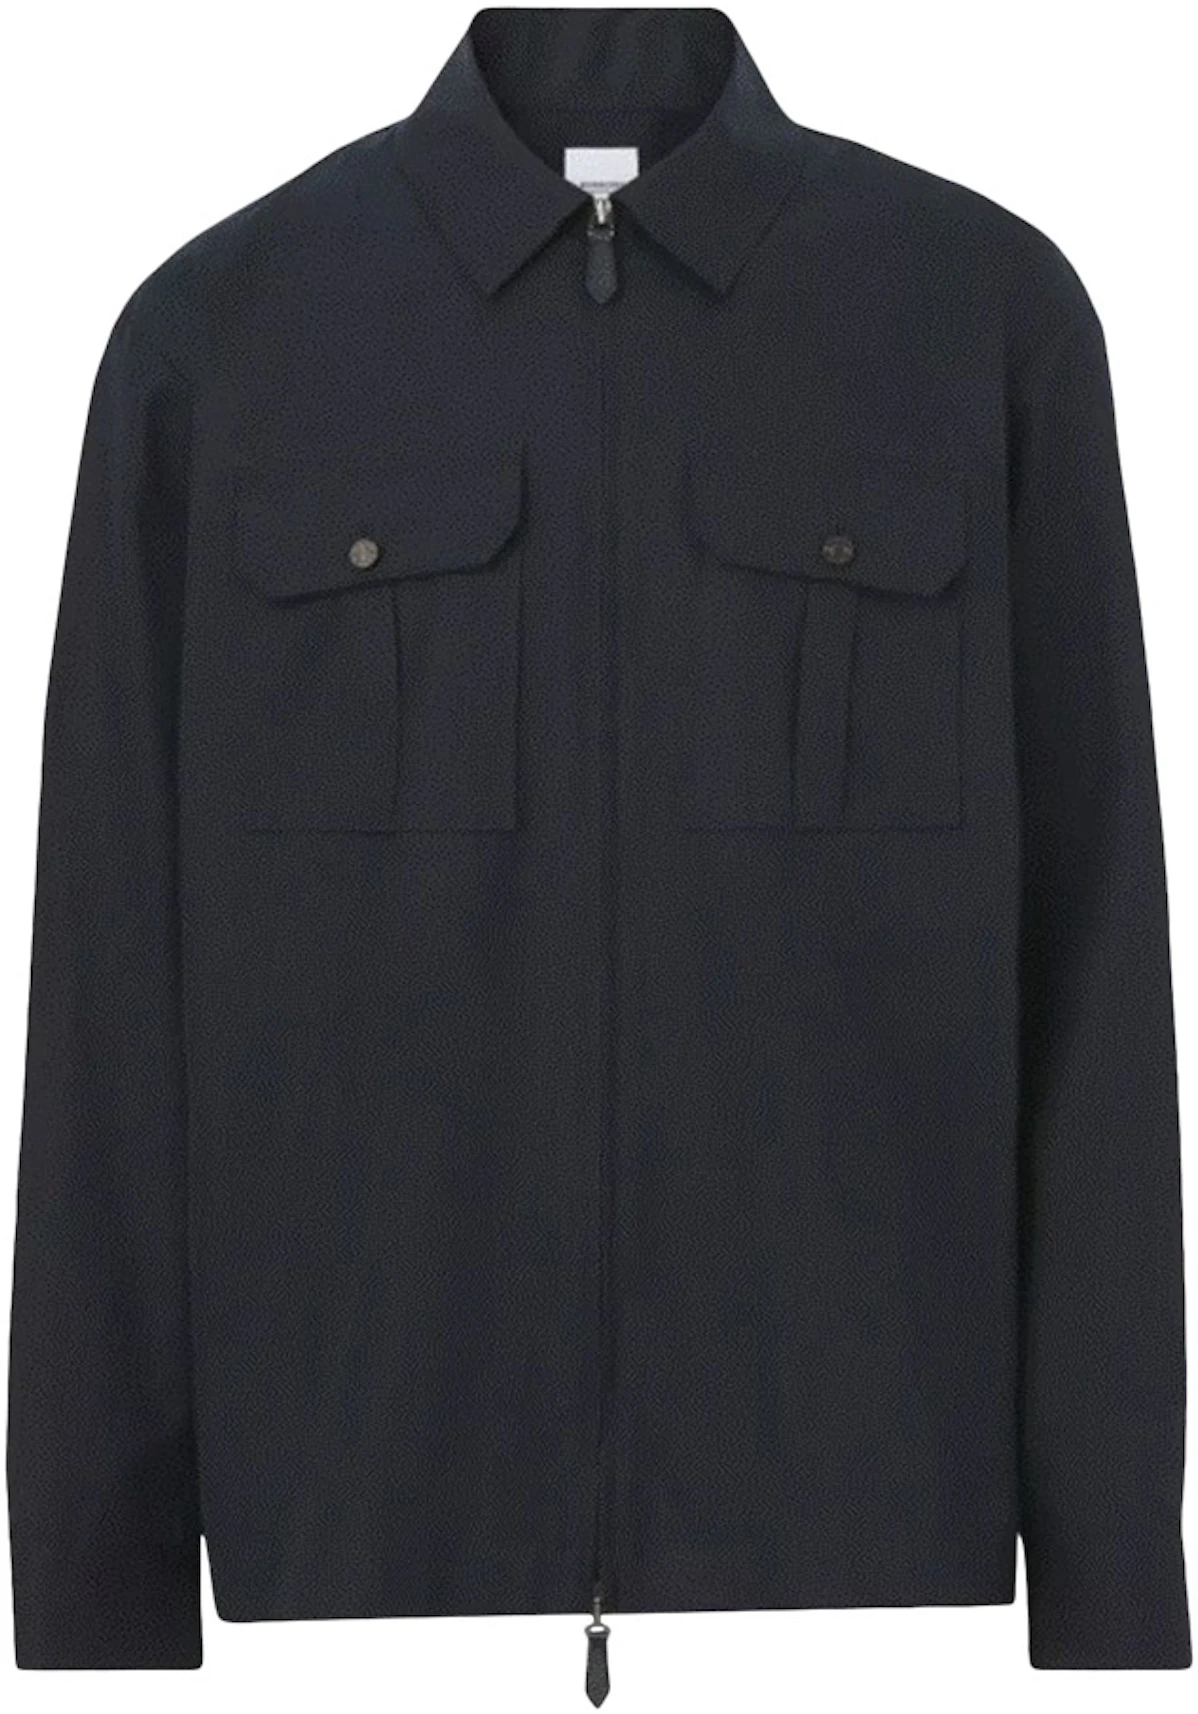 Burberry Hawes Cotton Zip Up Jacket Navy - US